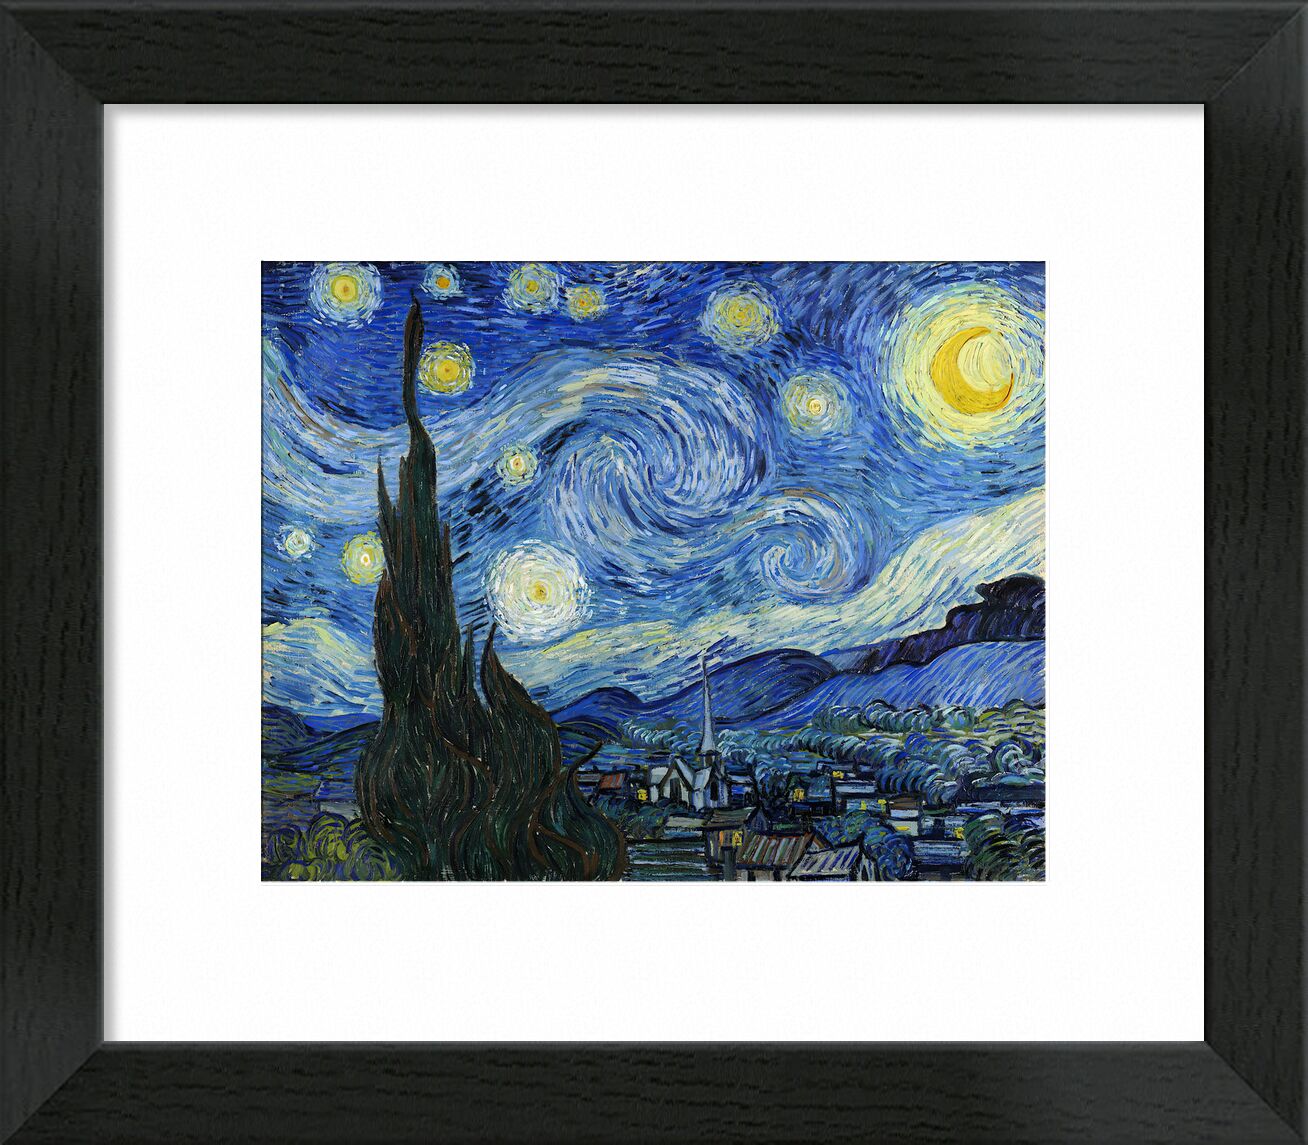 The Starry Night - 1889 von Bildende Kunst, Prodi Art, VINCENT VAN GOGH, Astra, Malerei, Dorf, Baum, Sterne, Nacht, Berge, Tal